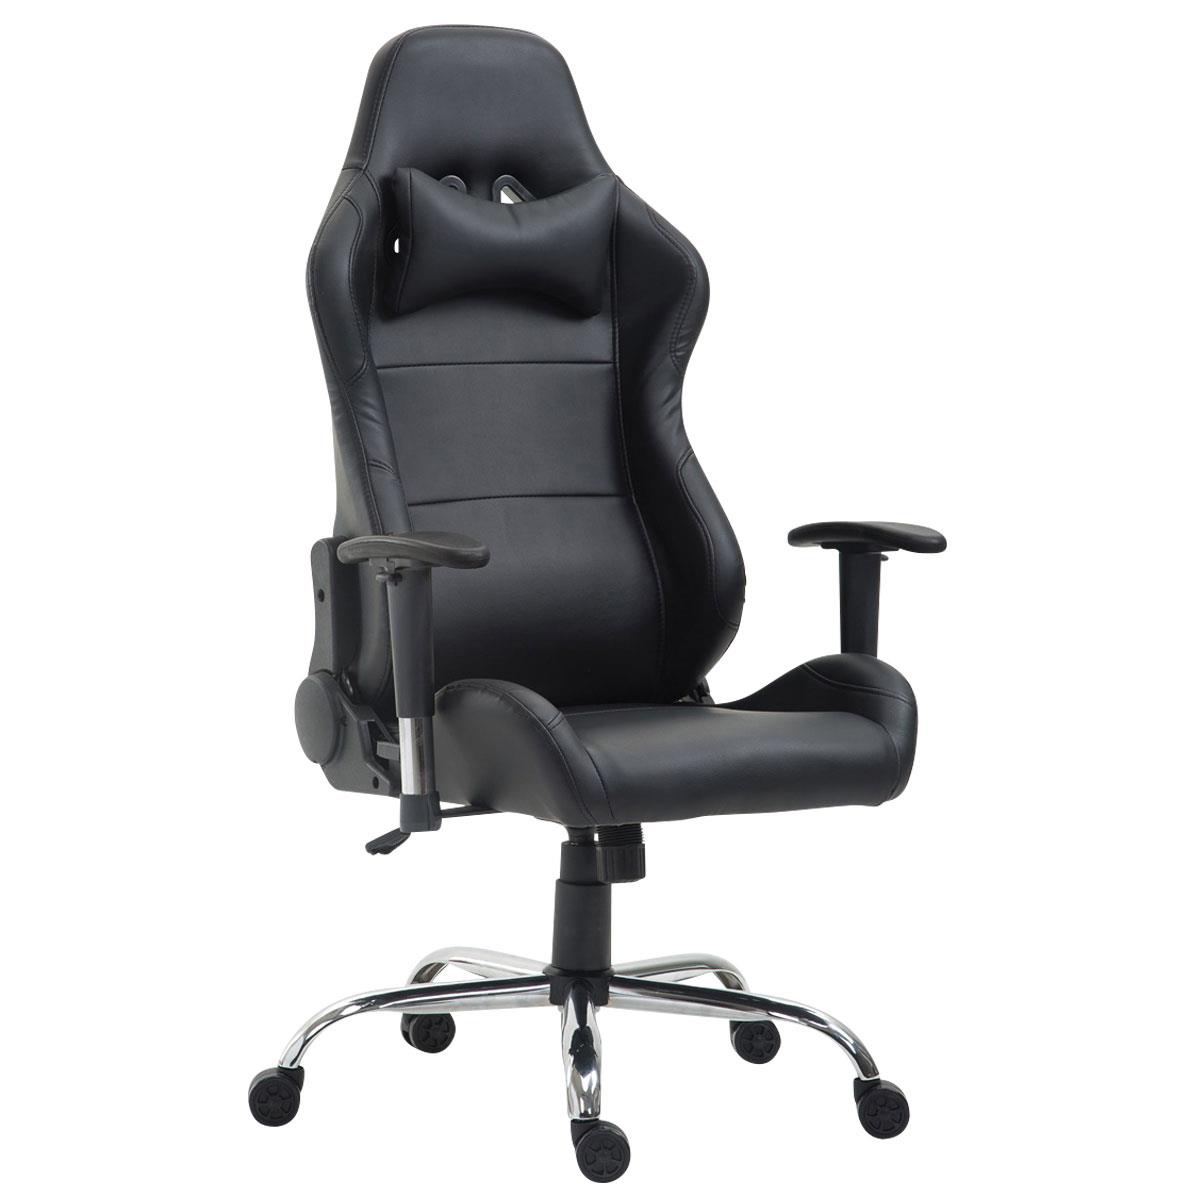 Gaming-Stuhl ROSBY sportliches Design und hoher Komfort, Lederbezug, Farbe Schwarz